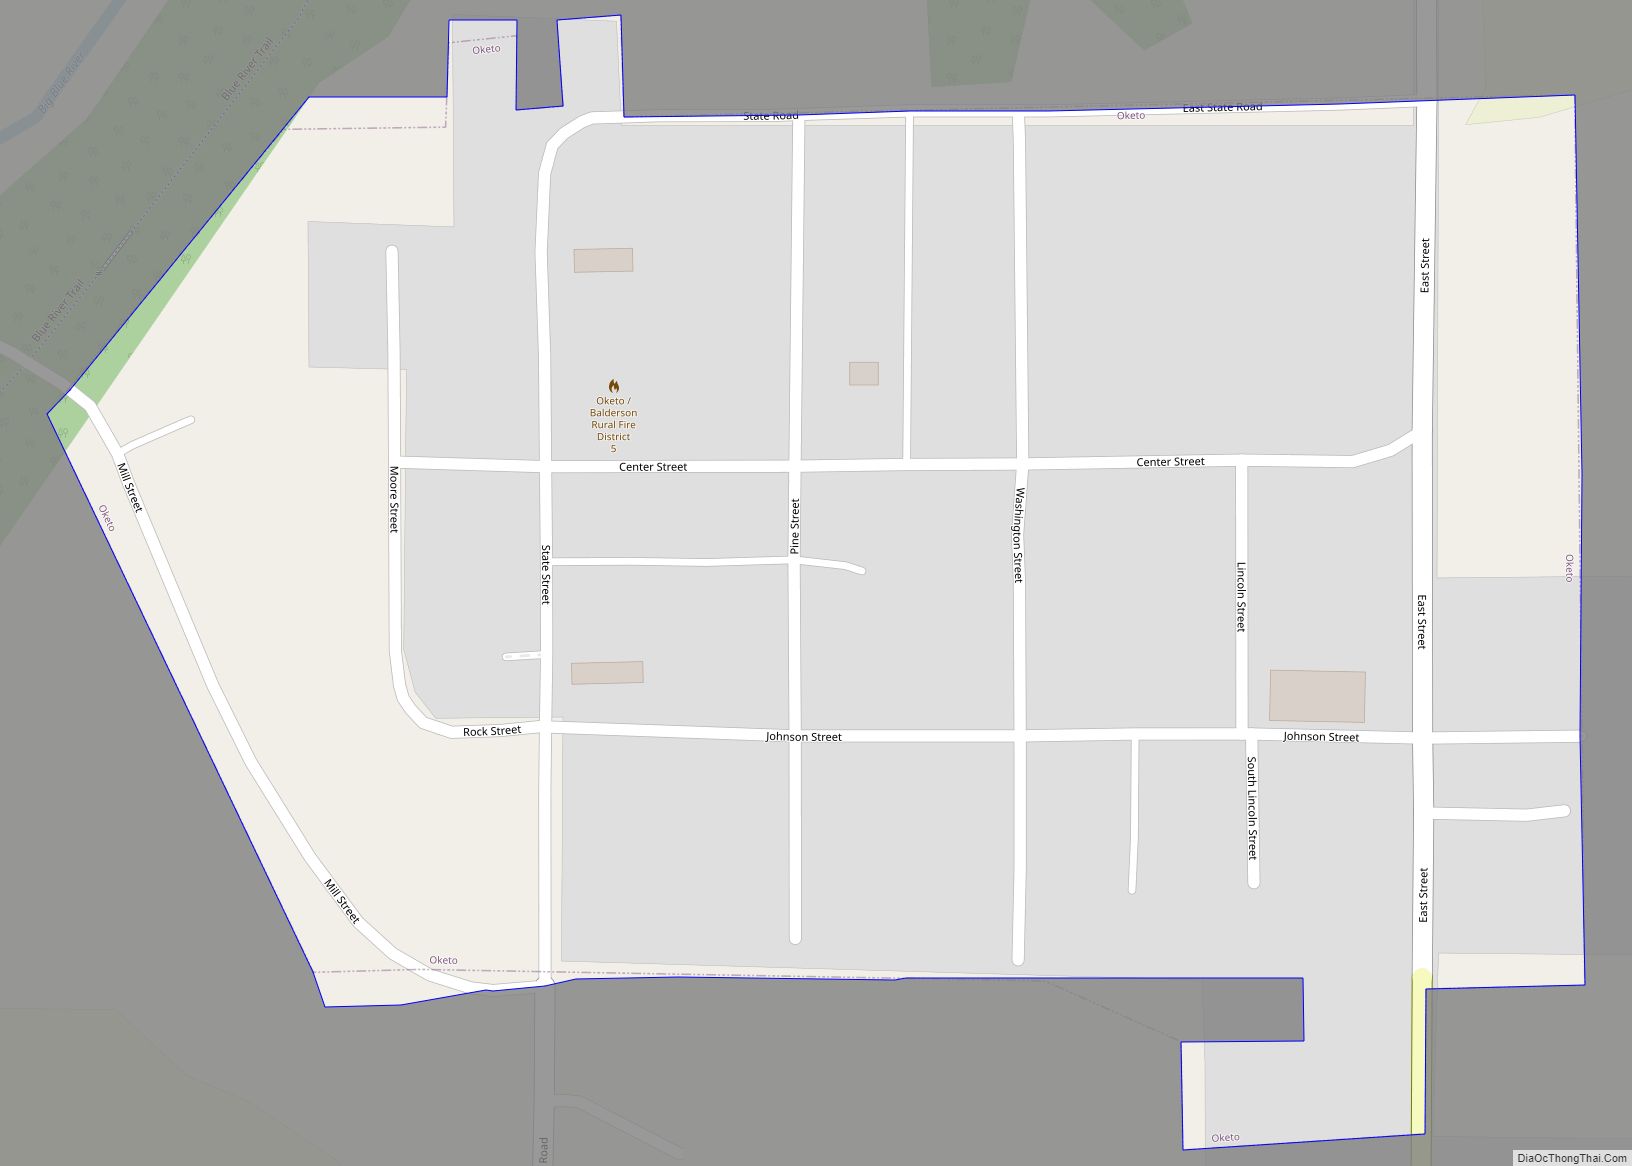 Map of Oketo city